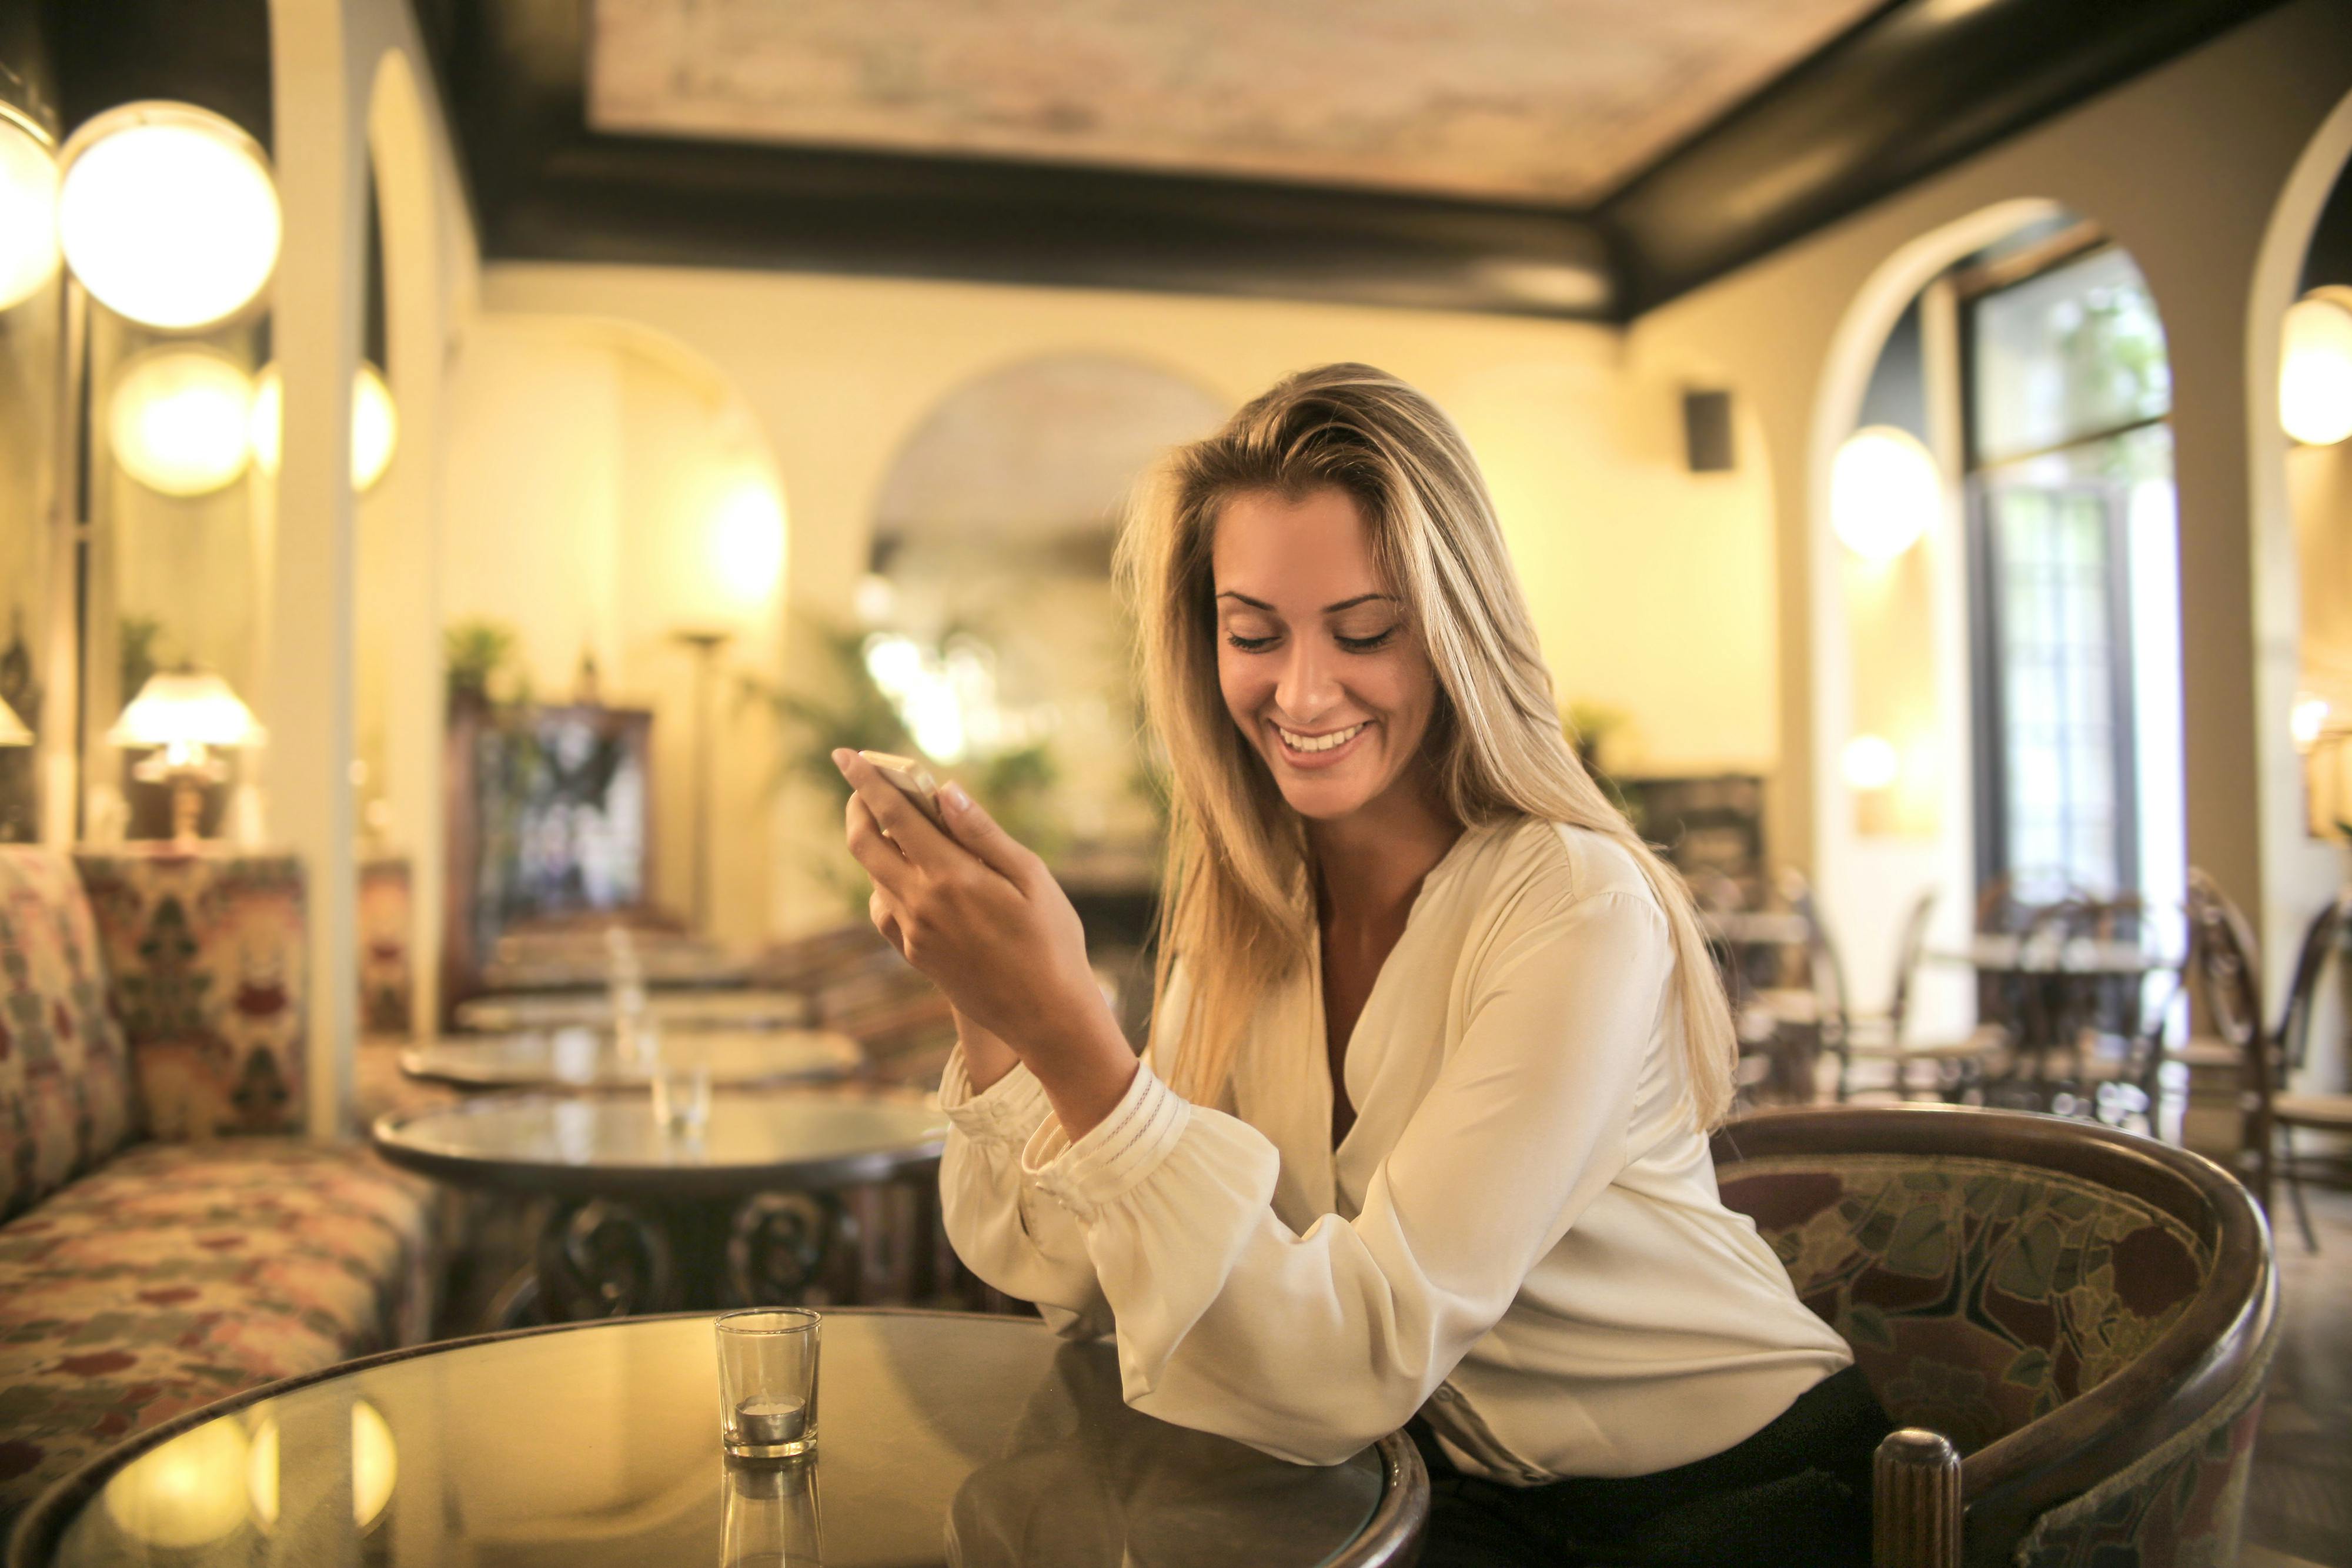 Une femme qui envoie des textos alors qu'elle est au restaurant | Source : Pexels